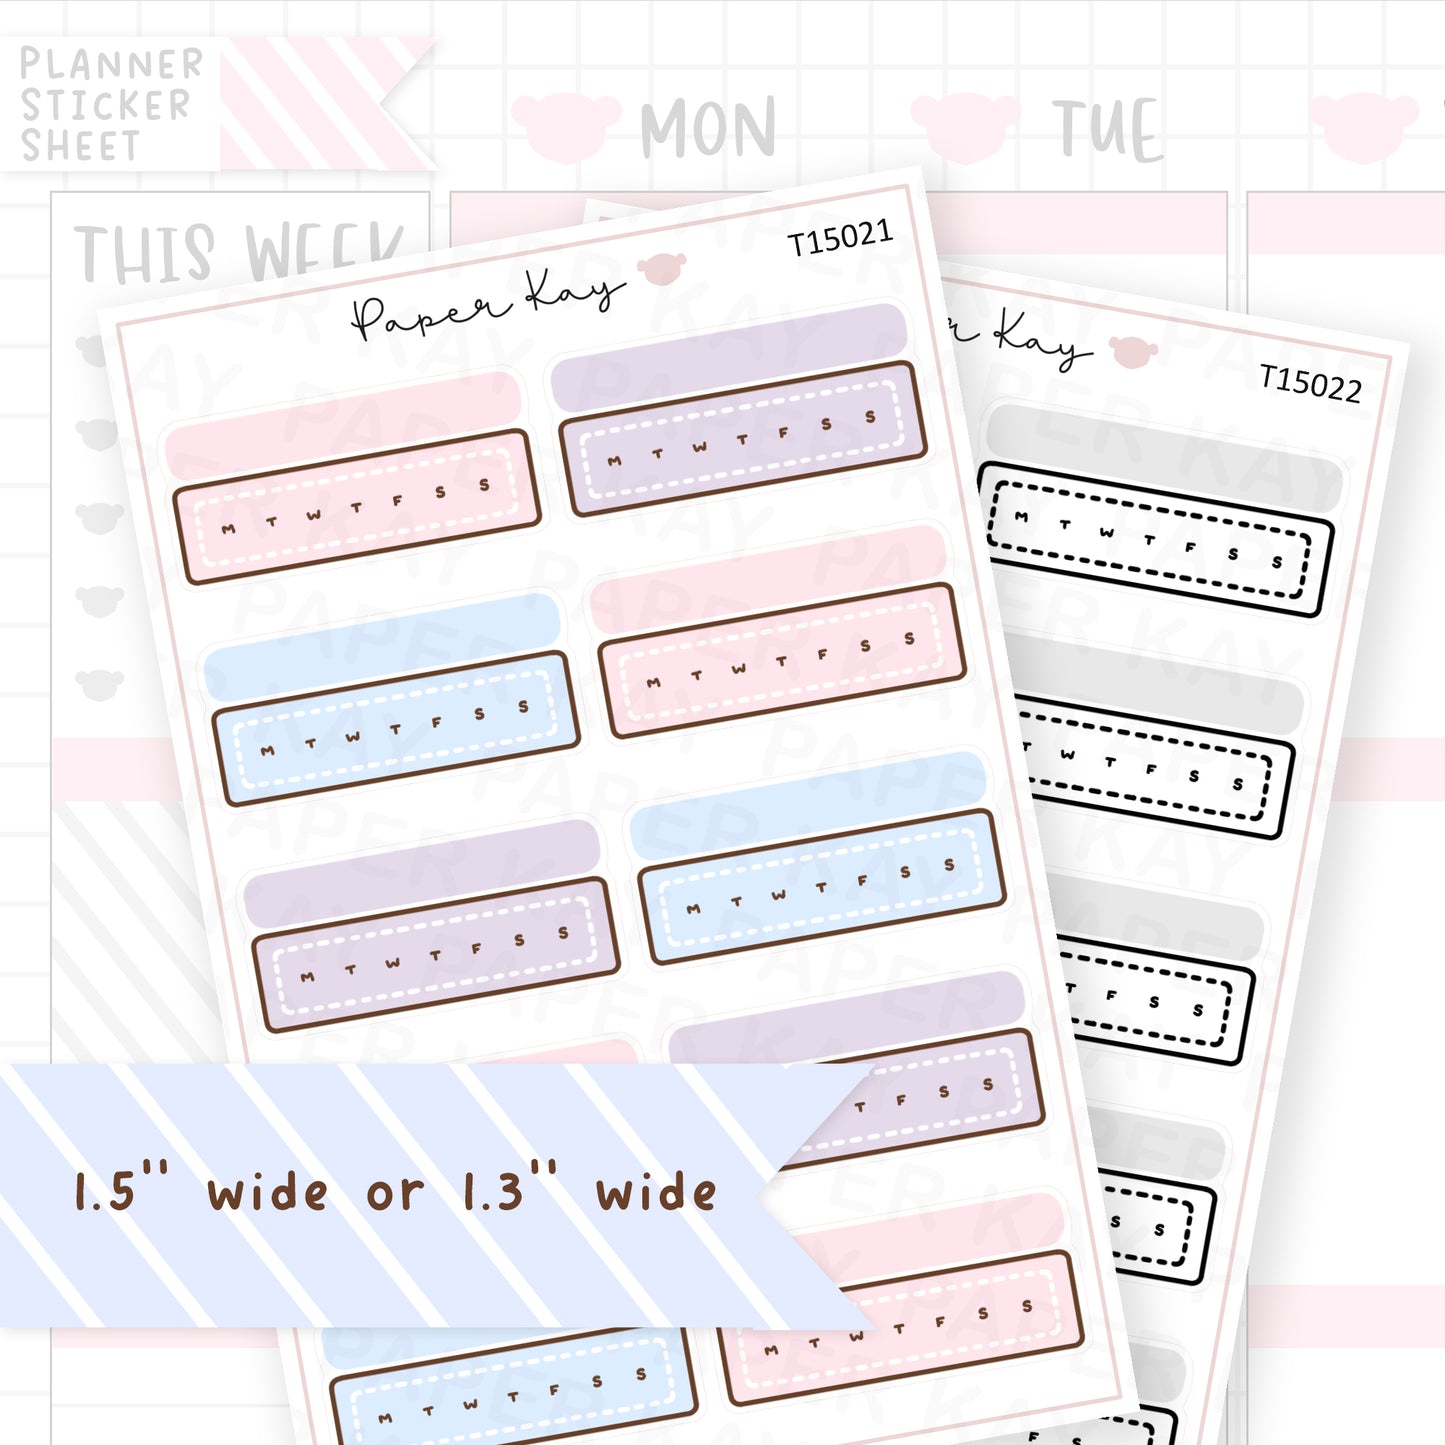 Blank Weekly Tracker Sticker Sheet